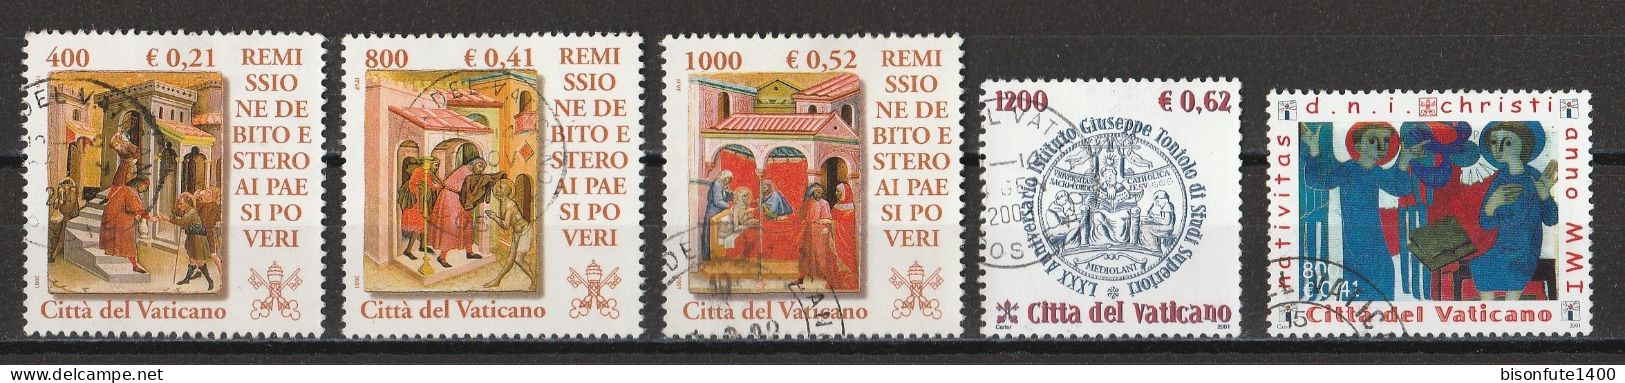 Vatican 2001 : Timbres Yvert & Tellier N° 1238 - 1239 - 1240 - 1246 - 1247 - 1248 Et 1249 Oblitérés. - Oblitérés